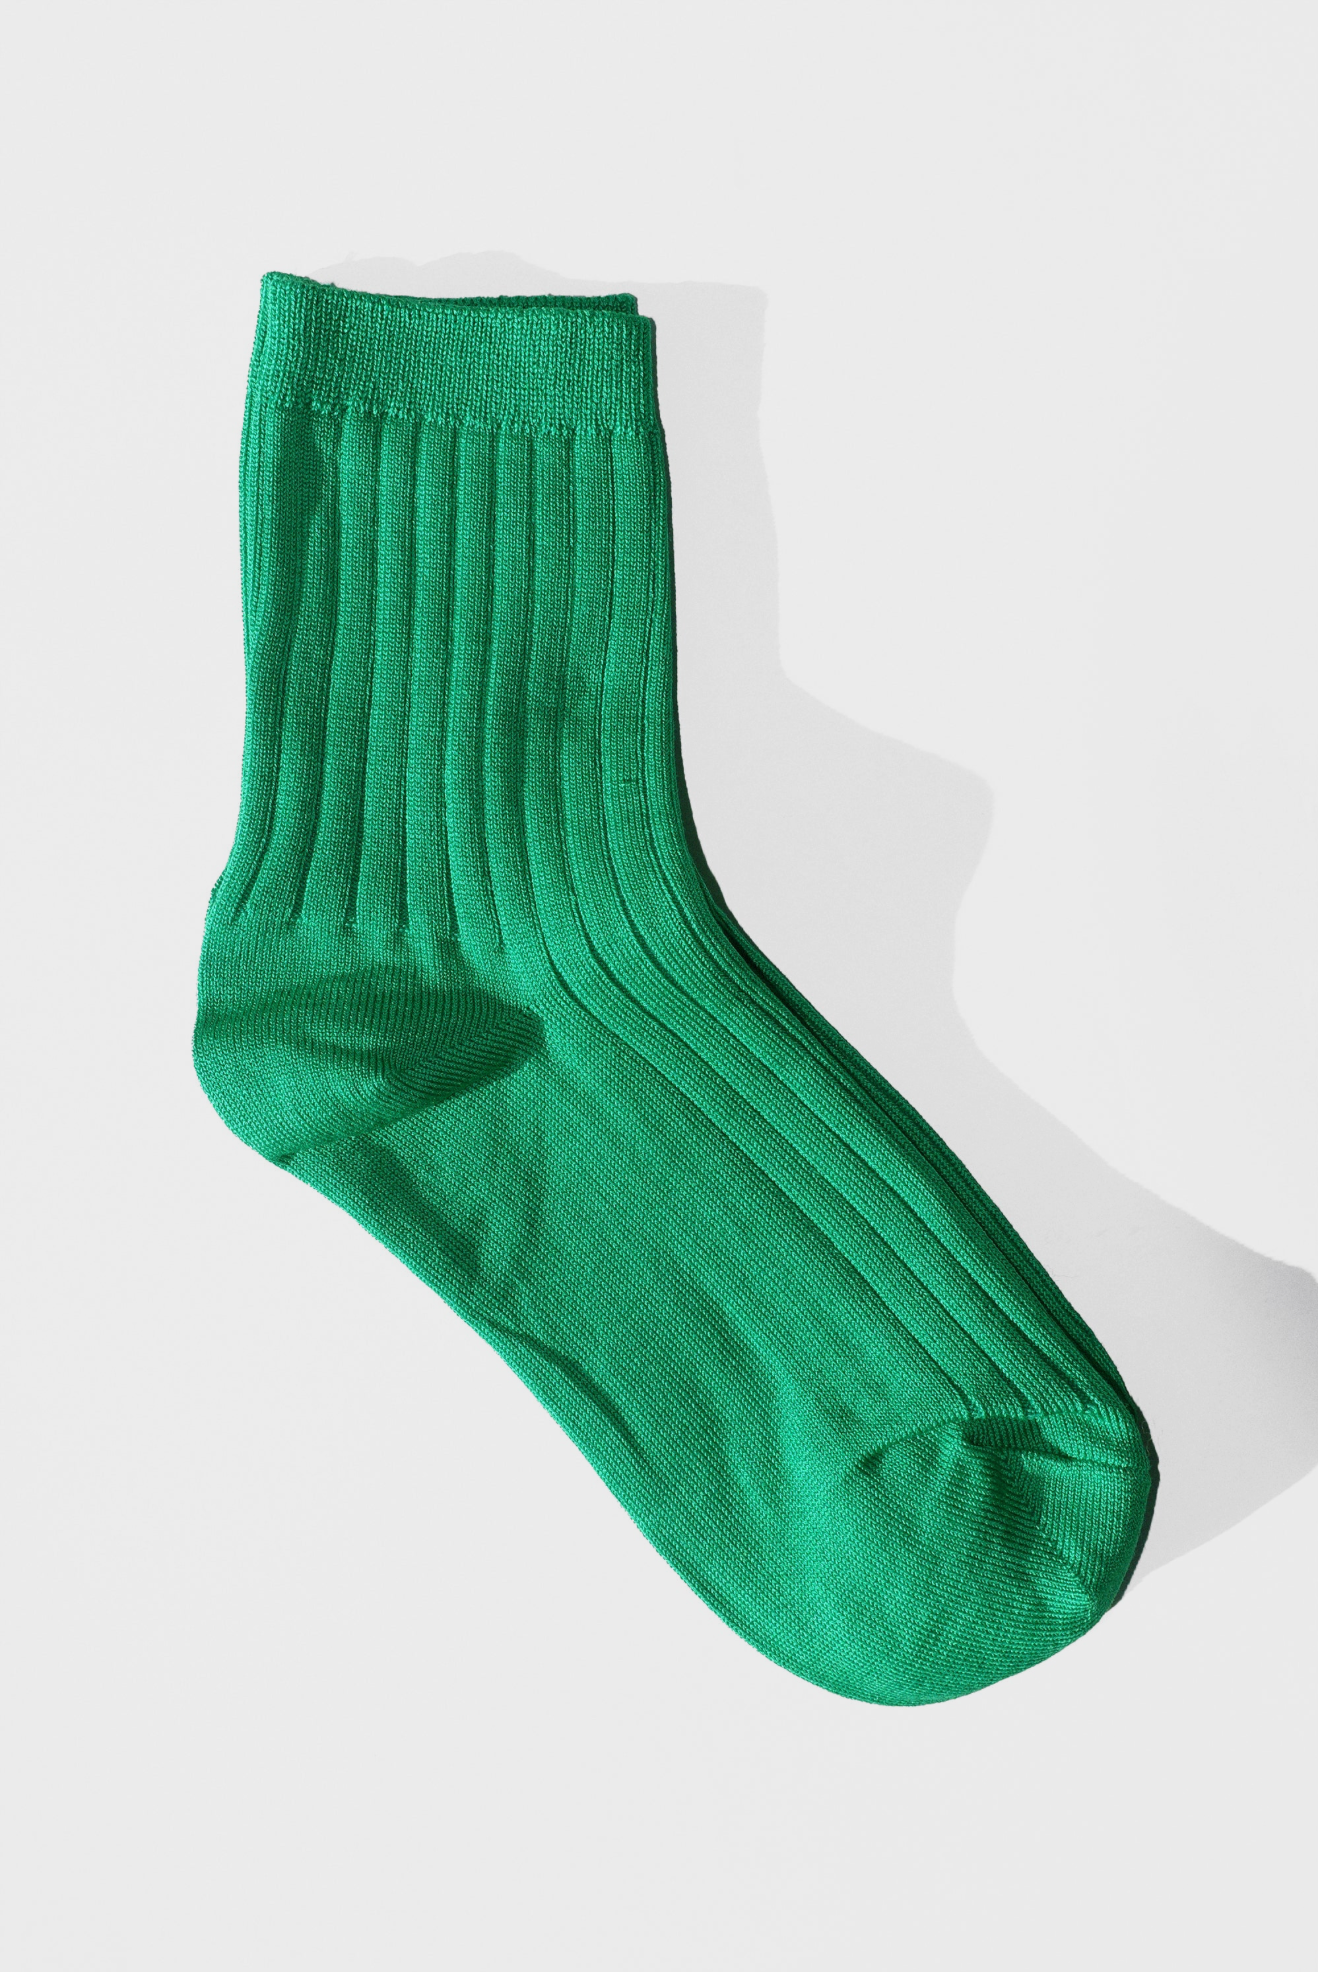 Her Socks in Kelly Green by Le Bon Shoppe